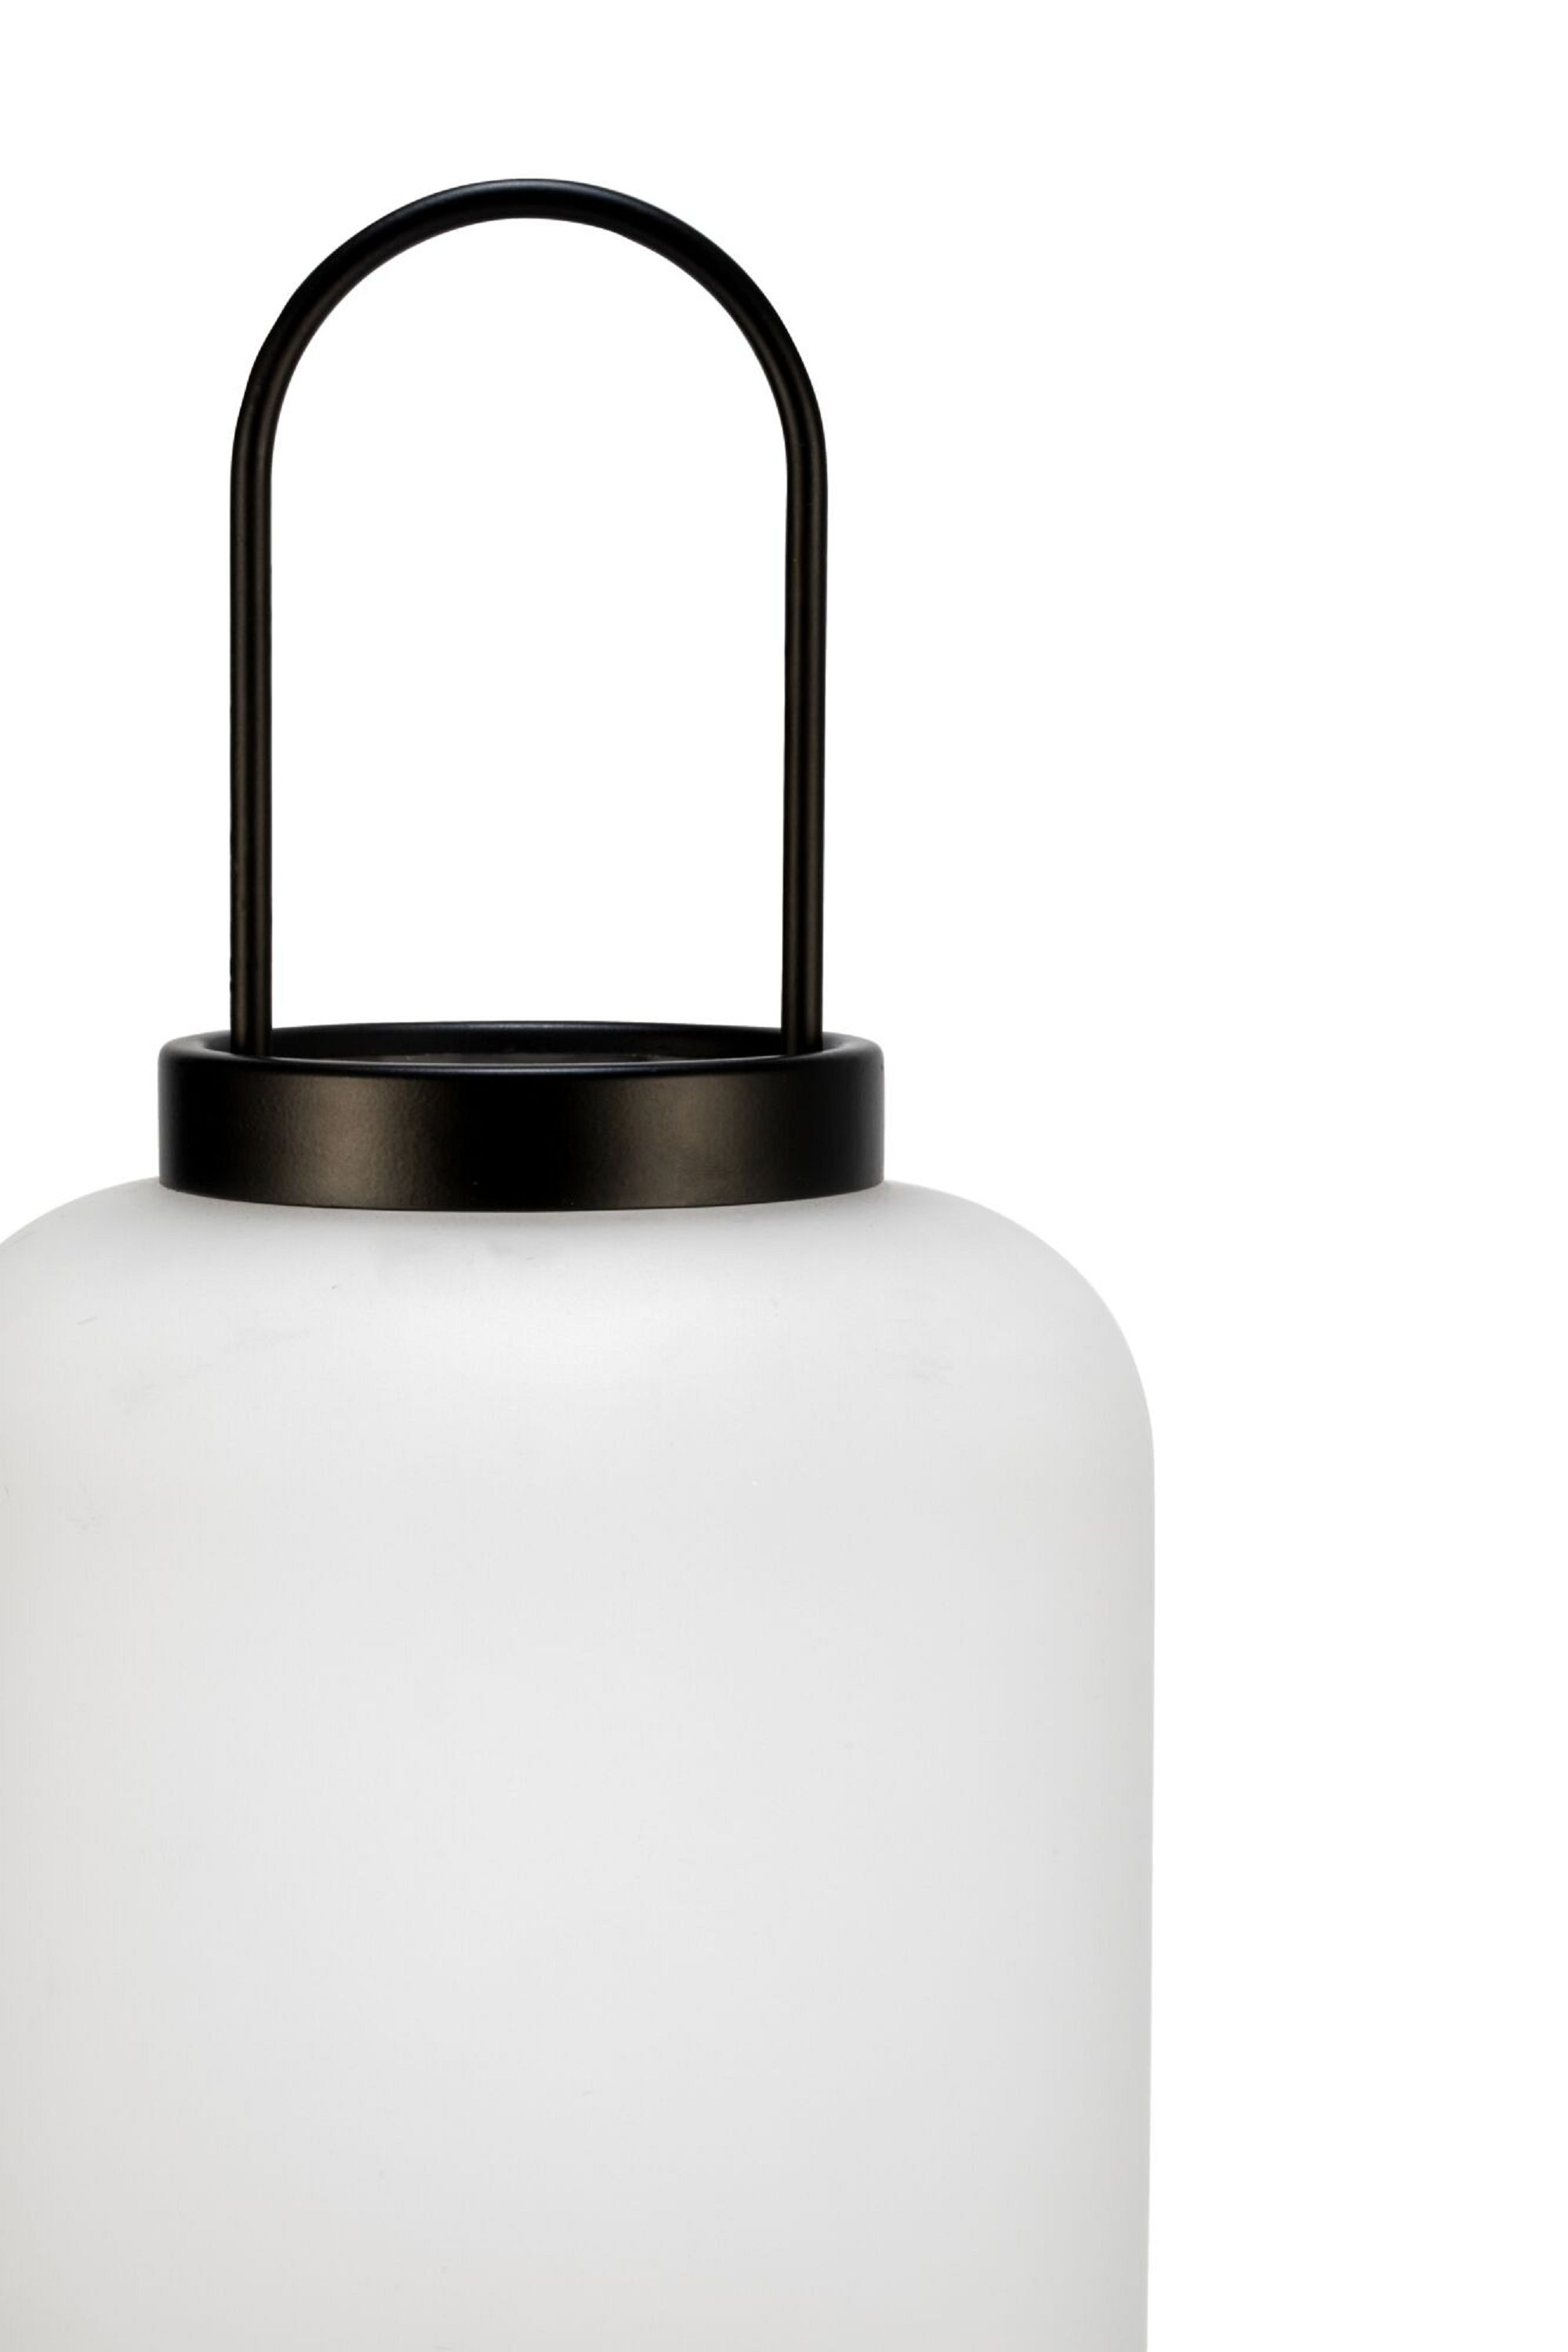 LICHT Outdoor Glow PAULMANN Mobile Warmweiß Tischleuchte lantern